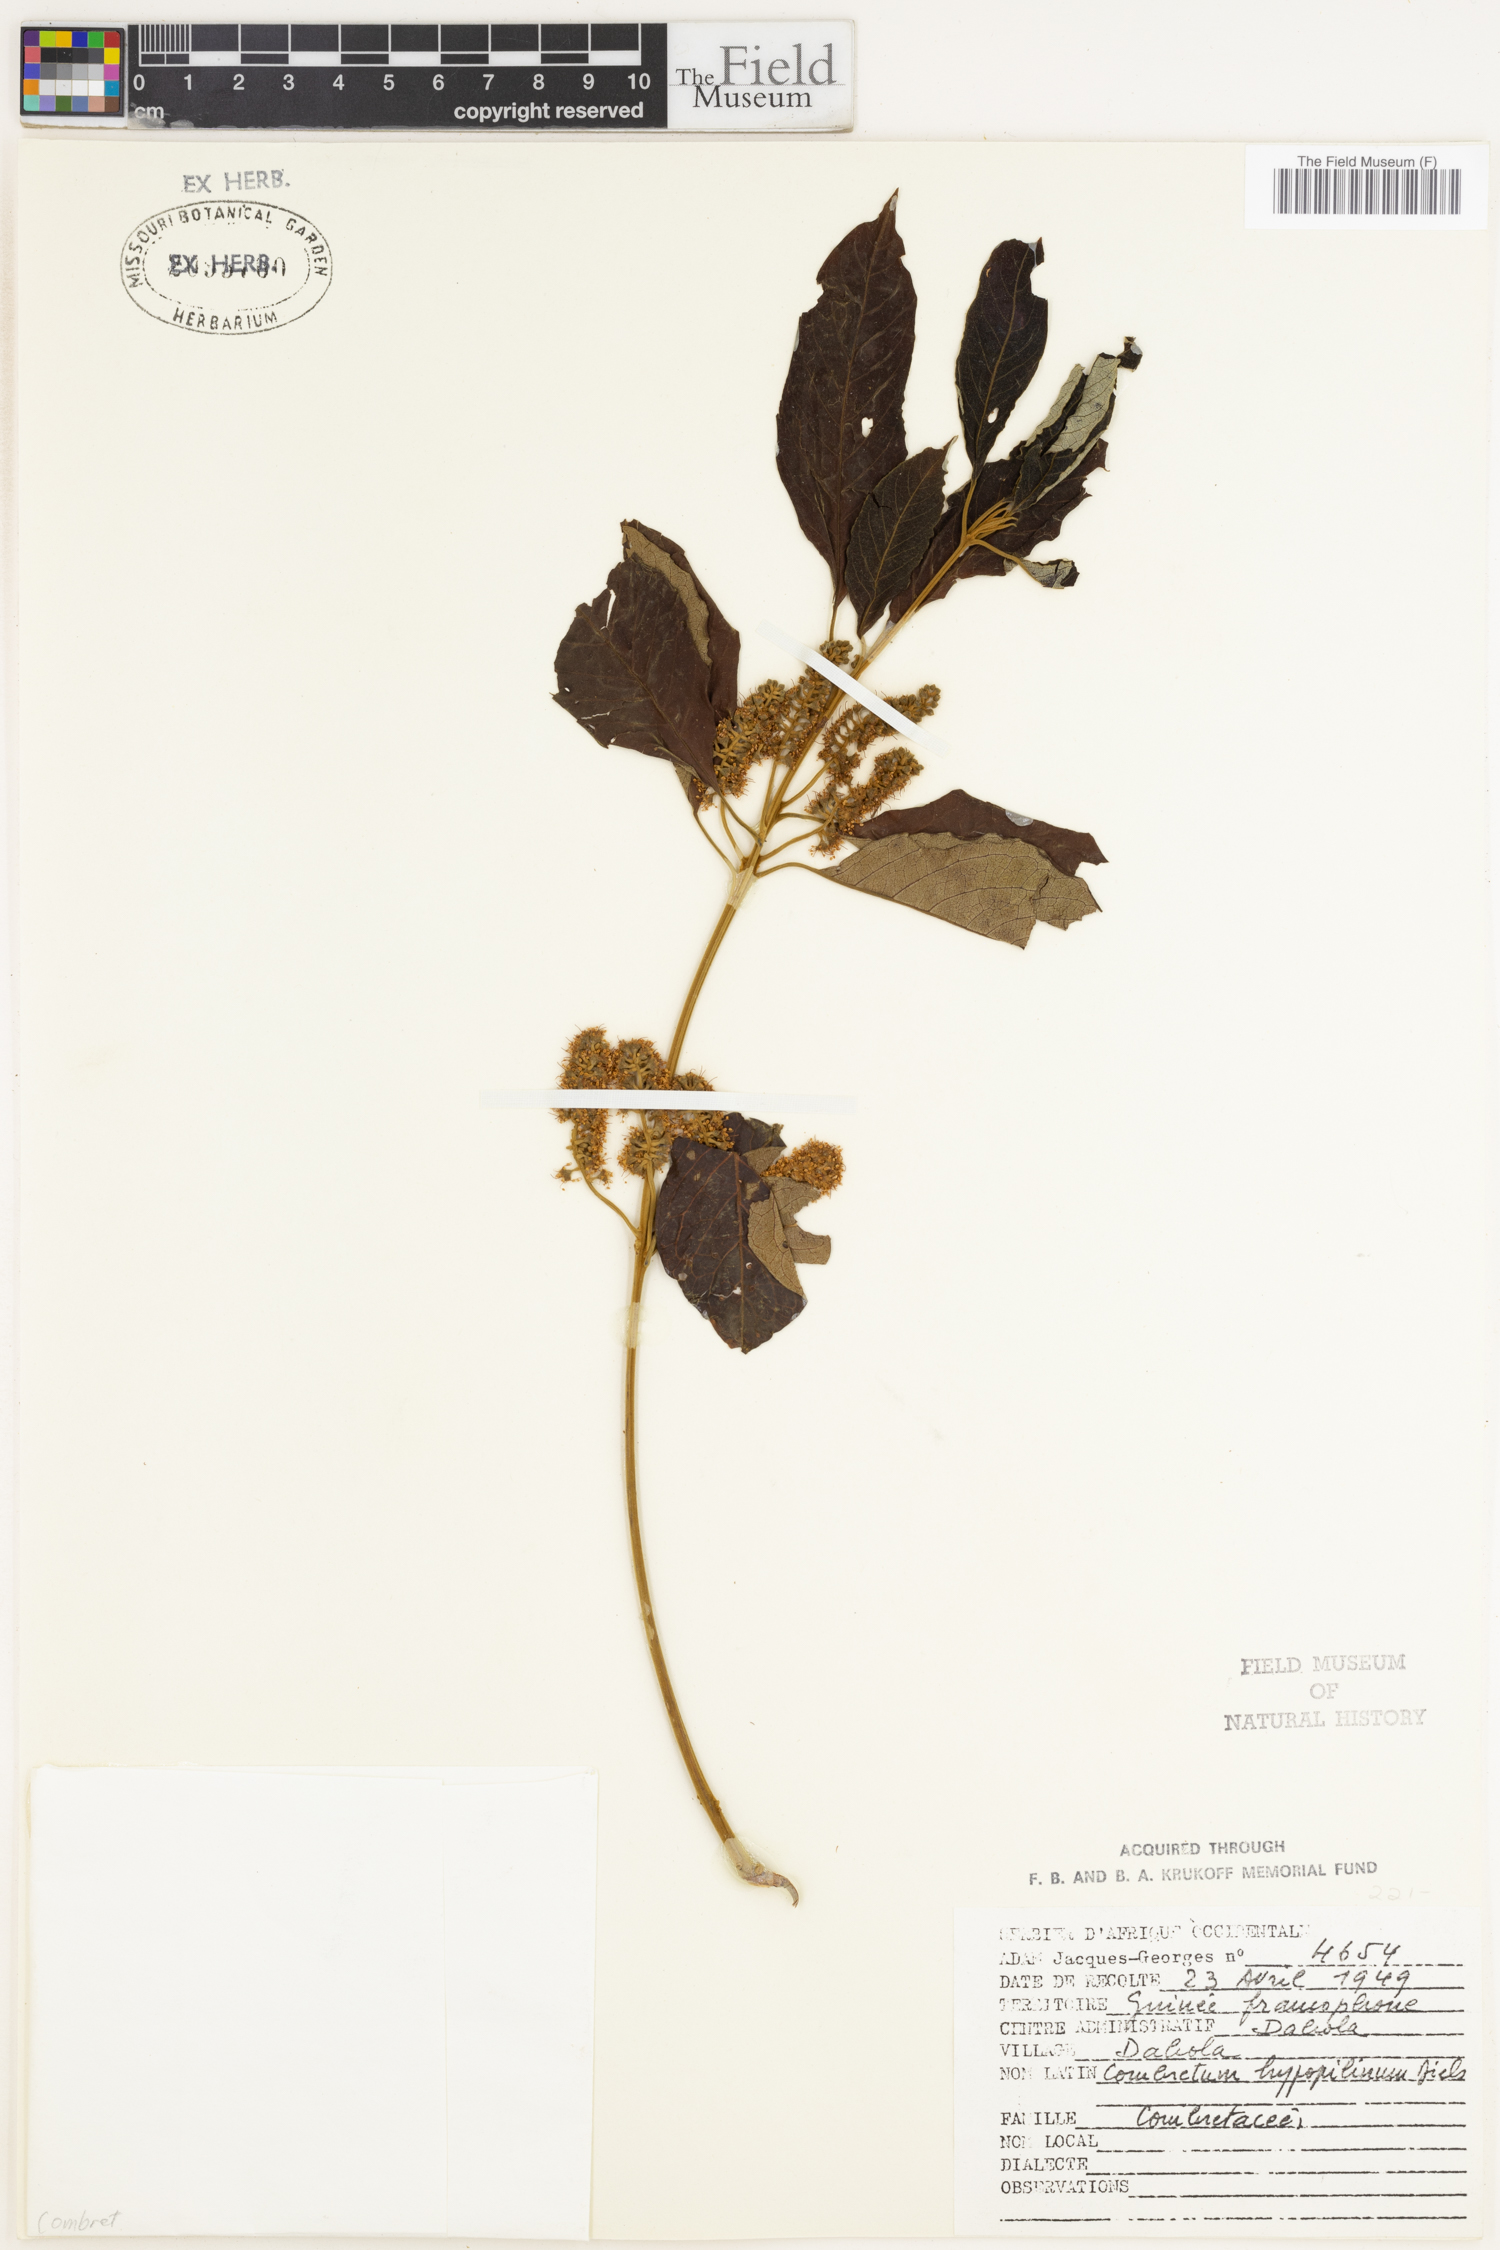 Combretum collinum subsp. hypopilinum image